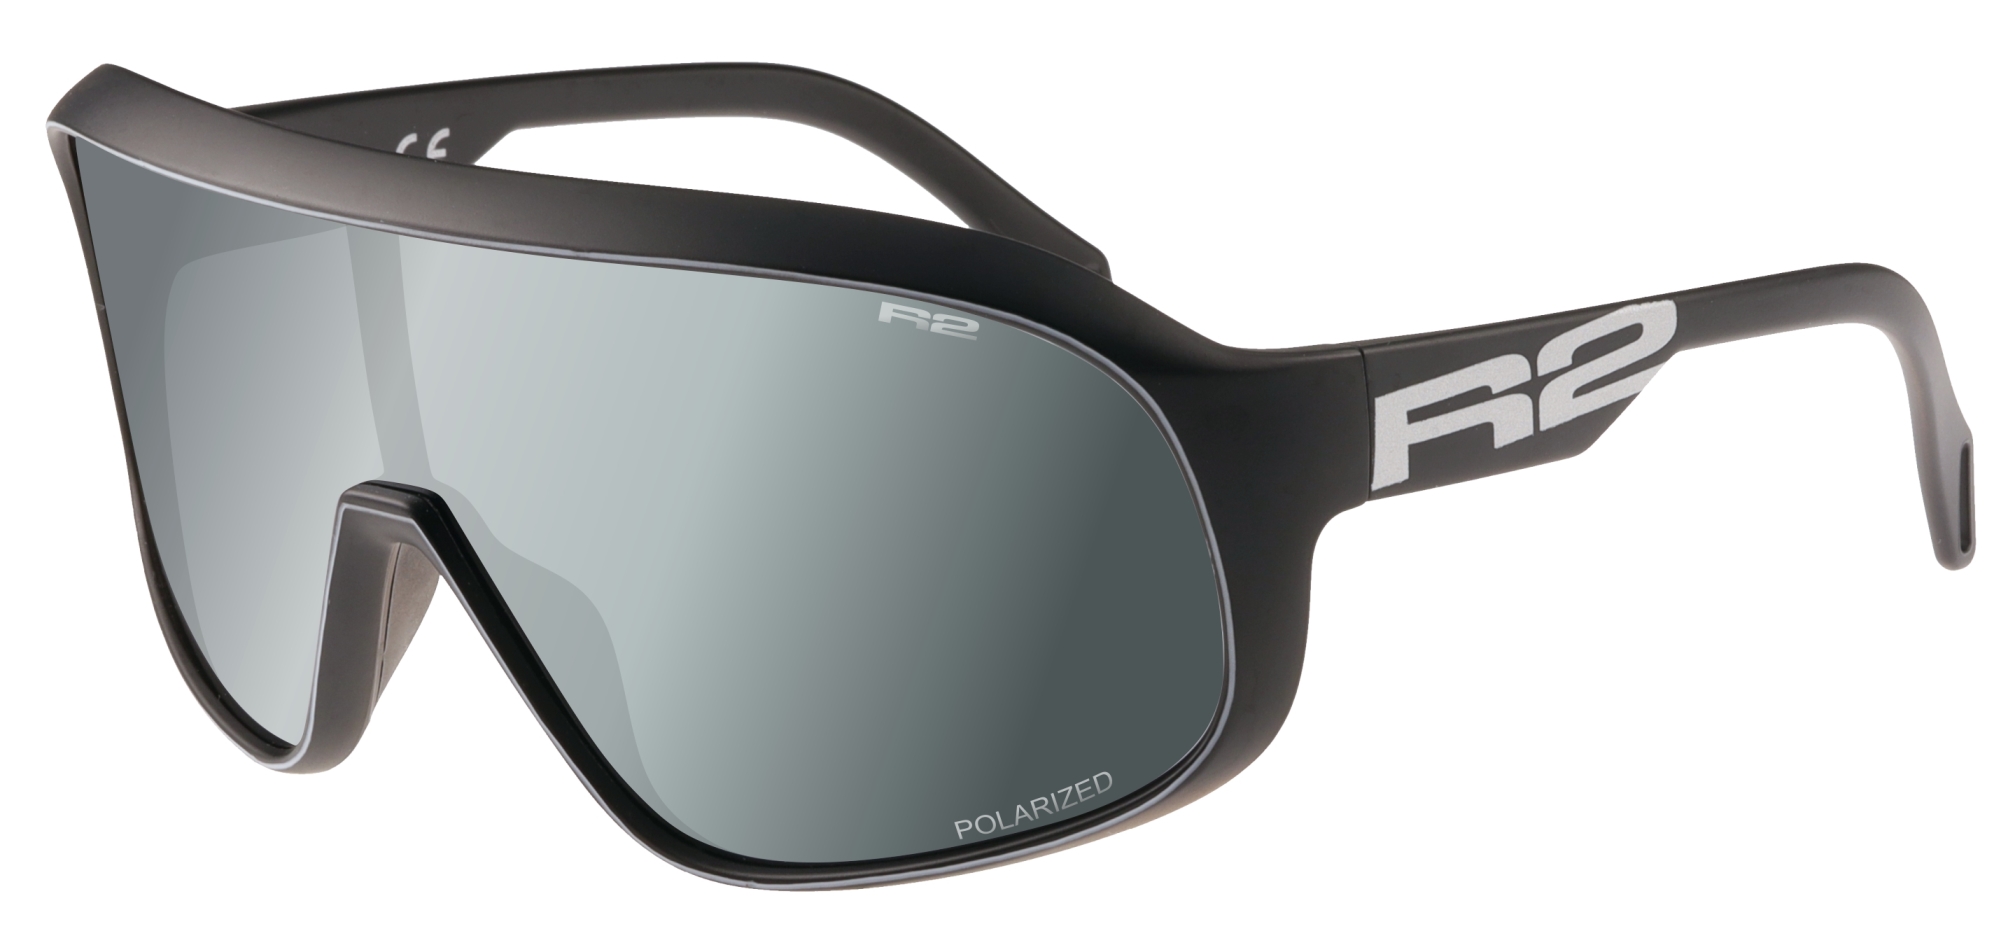 Sport sunglasses R2 FALCON AT105F standard